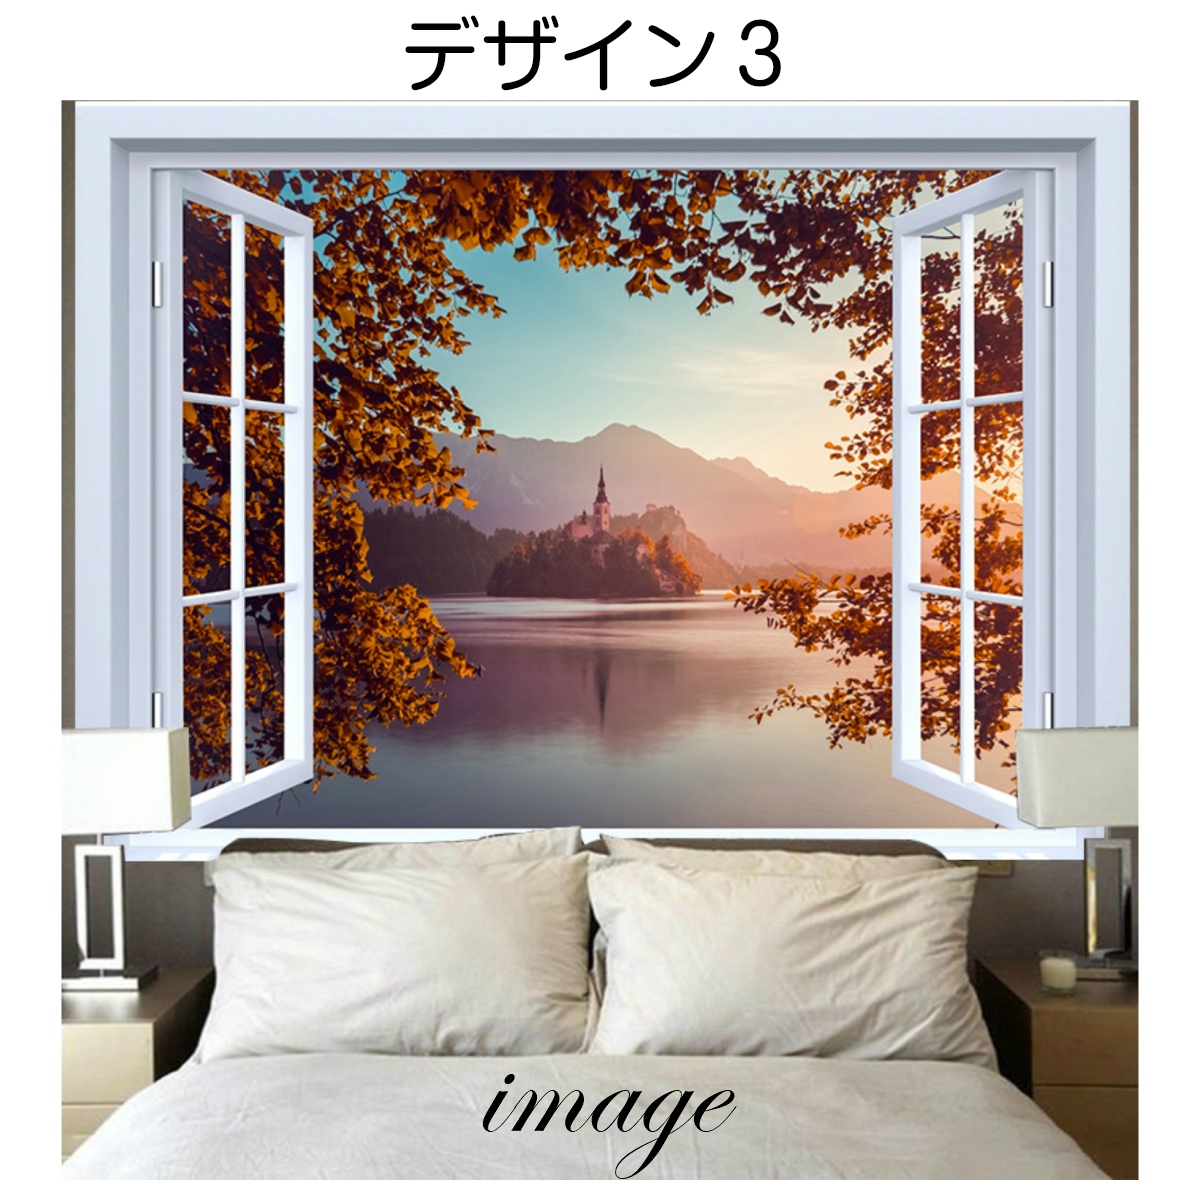 【楽天市場】紅葉 タペストリー もみじ 秋 木 富士山 チューリップ 滝 季節 風景 景色 窓 だまし絵 森 山 和風 きれい さわやか 癒し